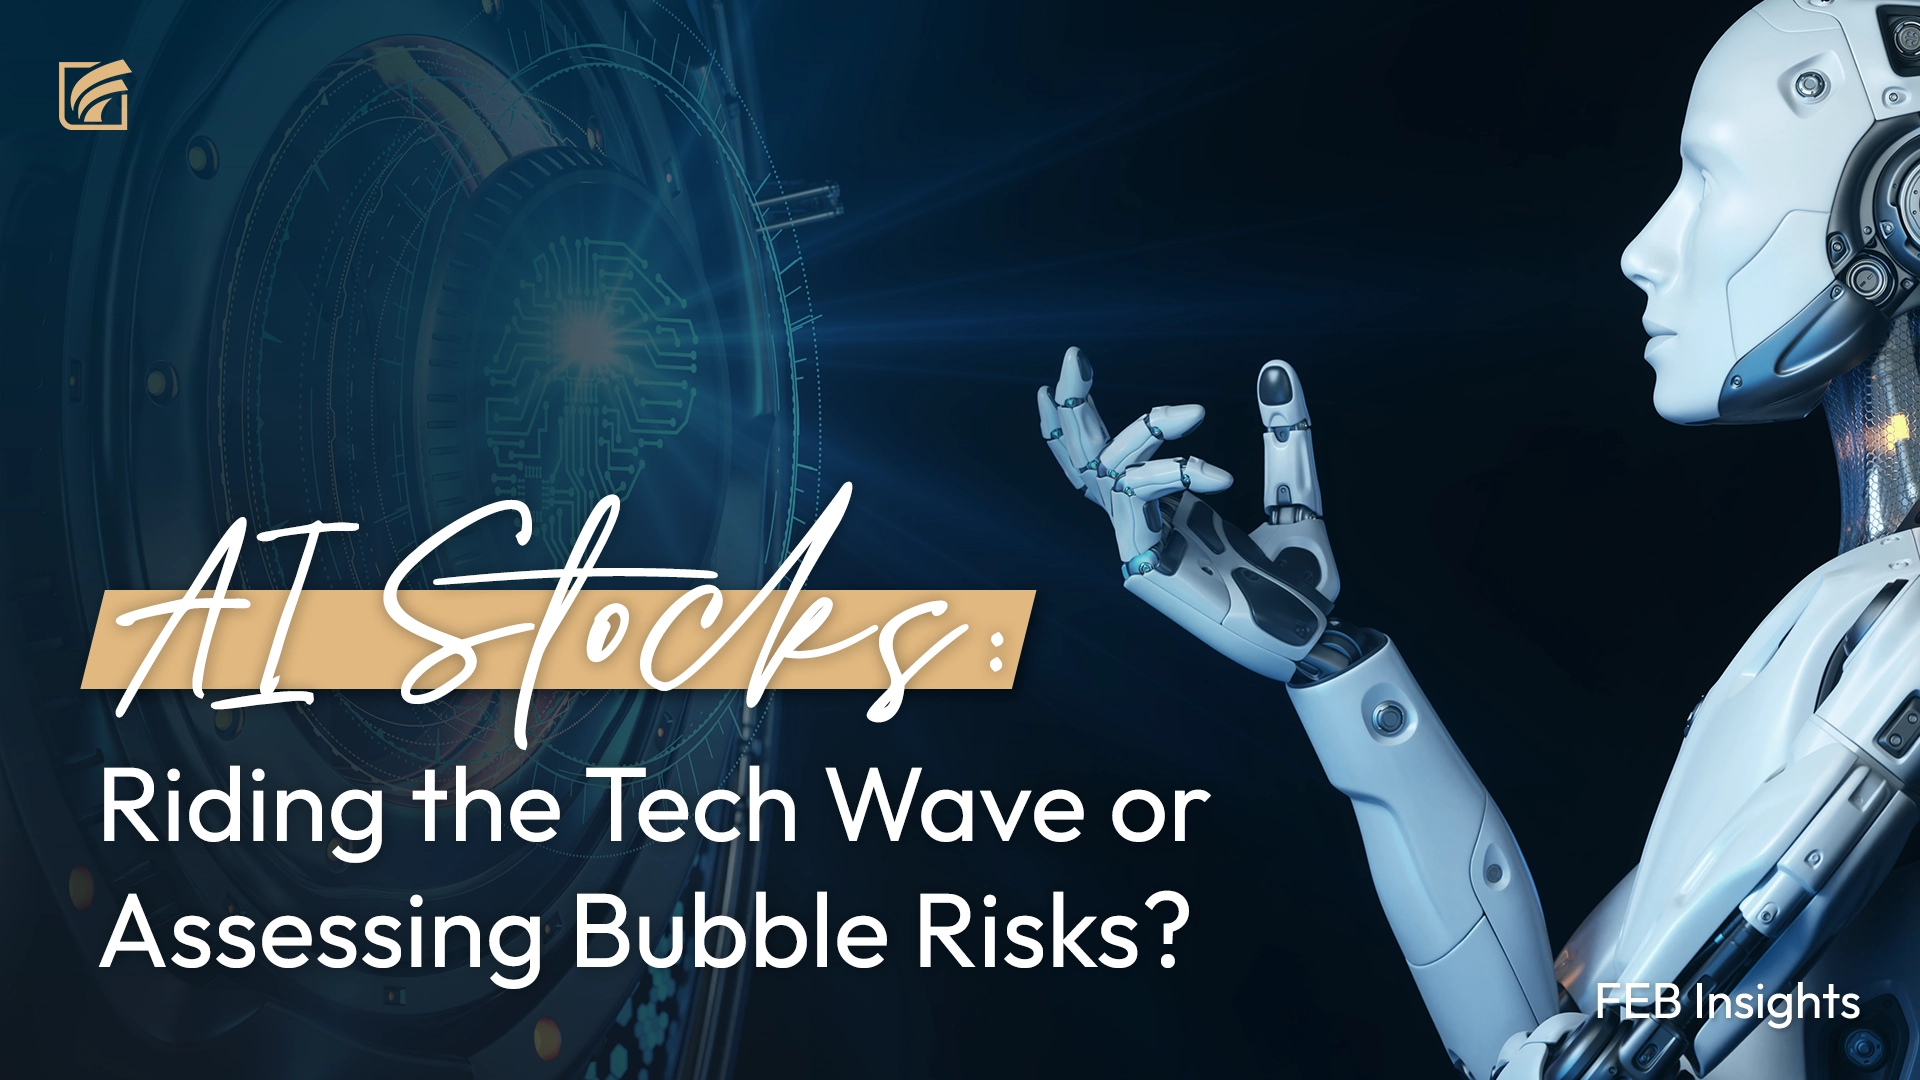 人工智能(AI)股票：顺应科技浪潮还是评估泡沫风险？